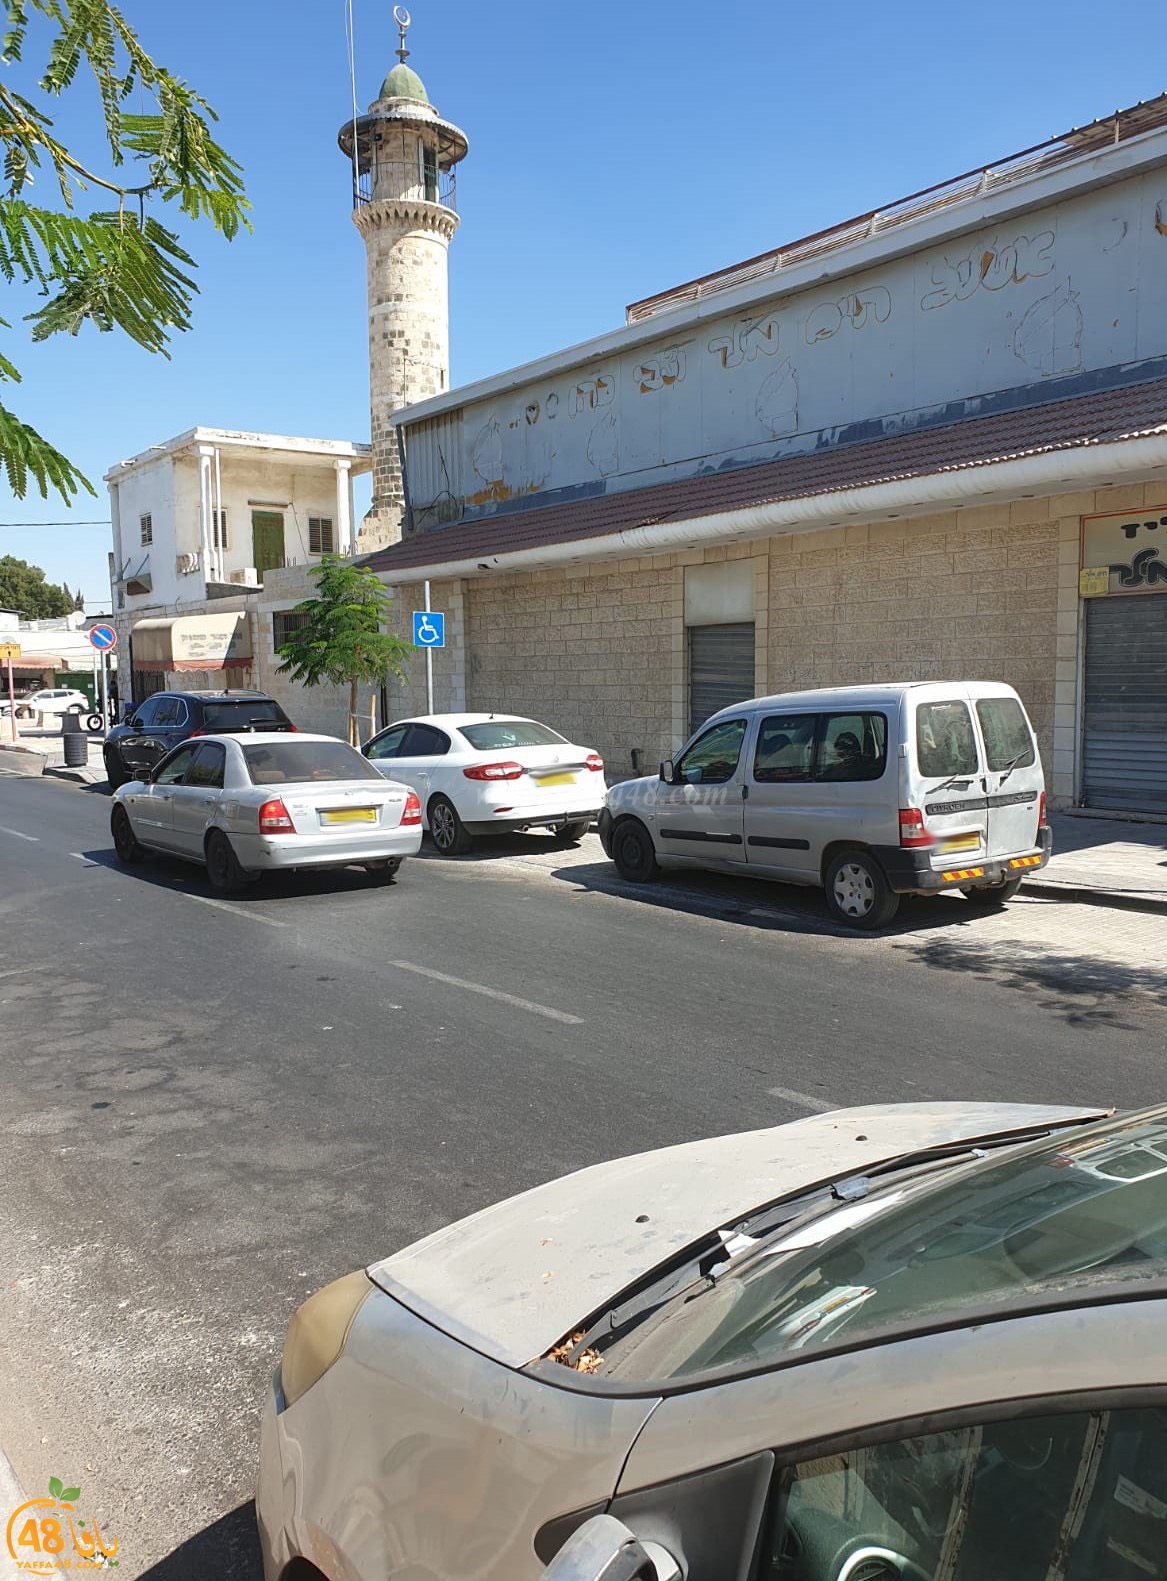  بالصور: بلدية اللد تحرر مخالفات سير للمصلين في مسجد دهمش